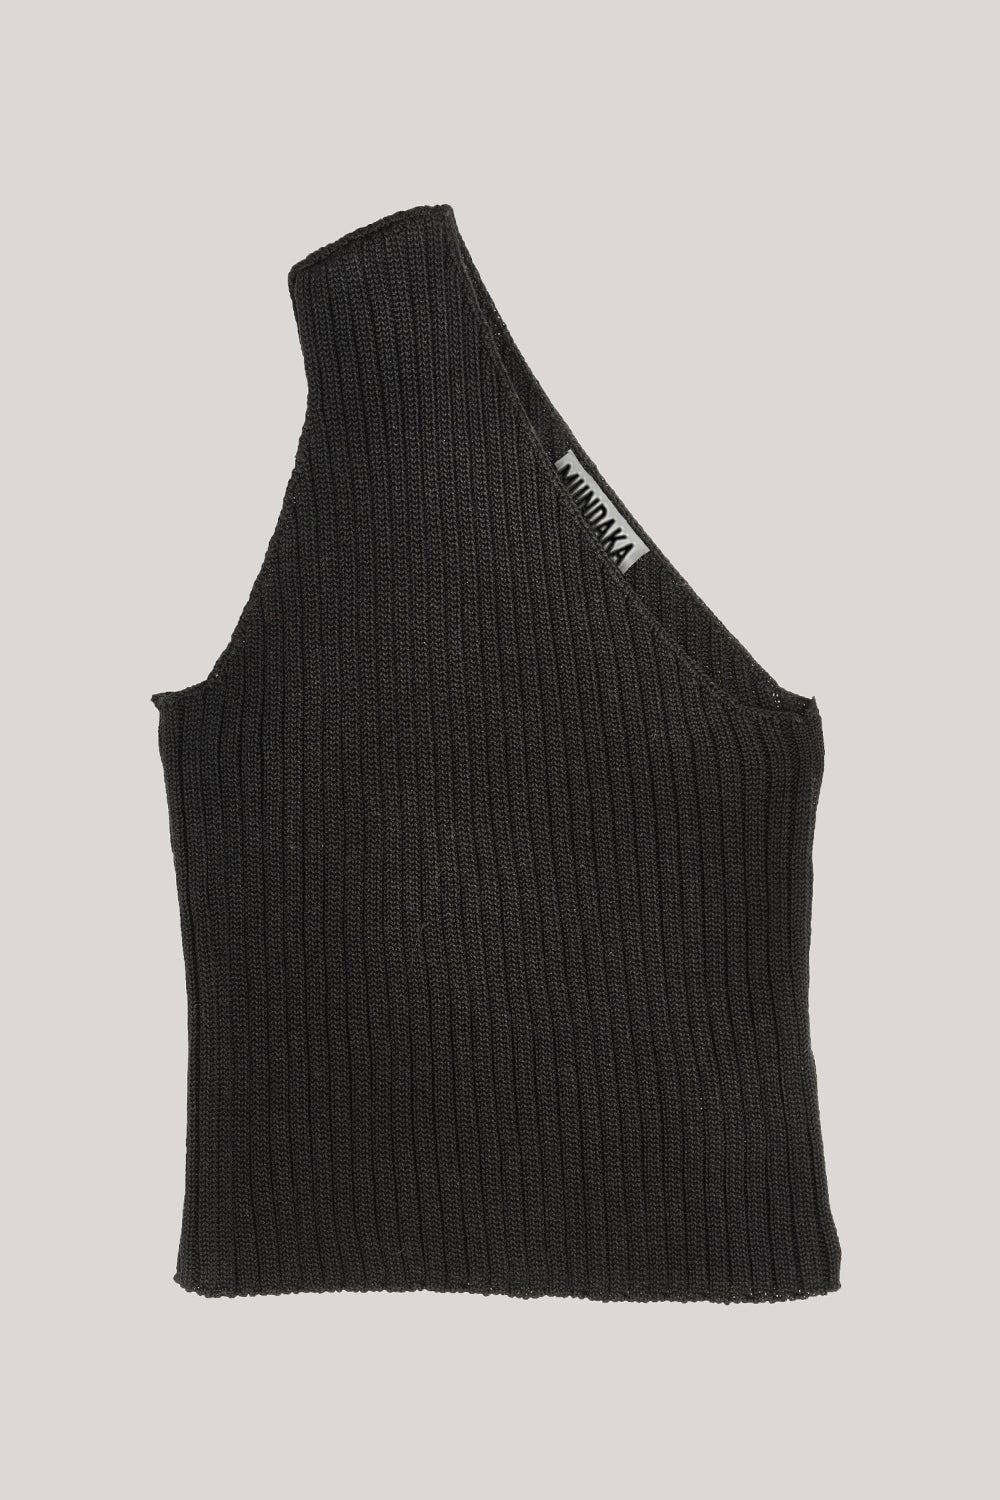 black one-shoulder knit top